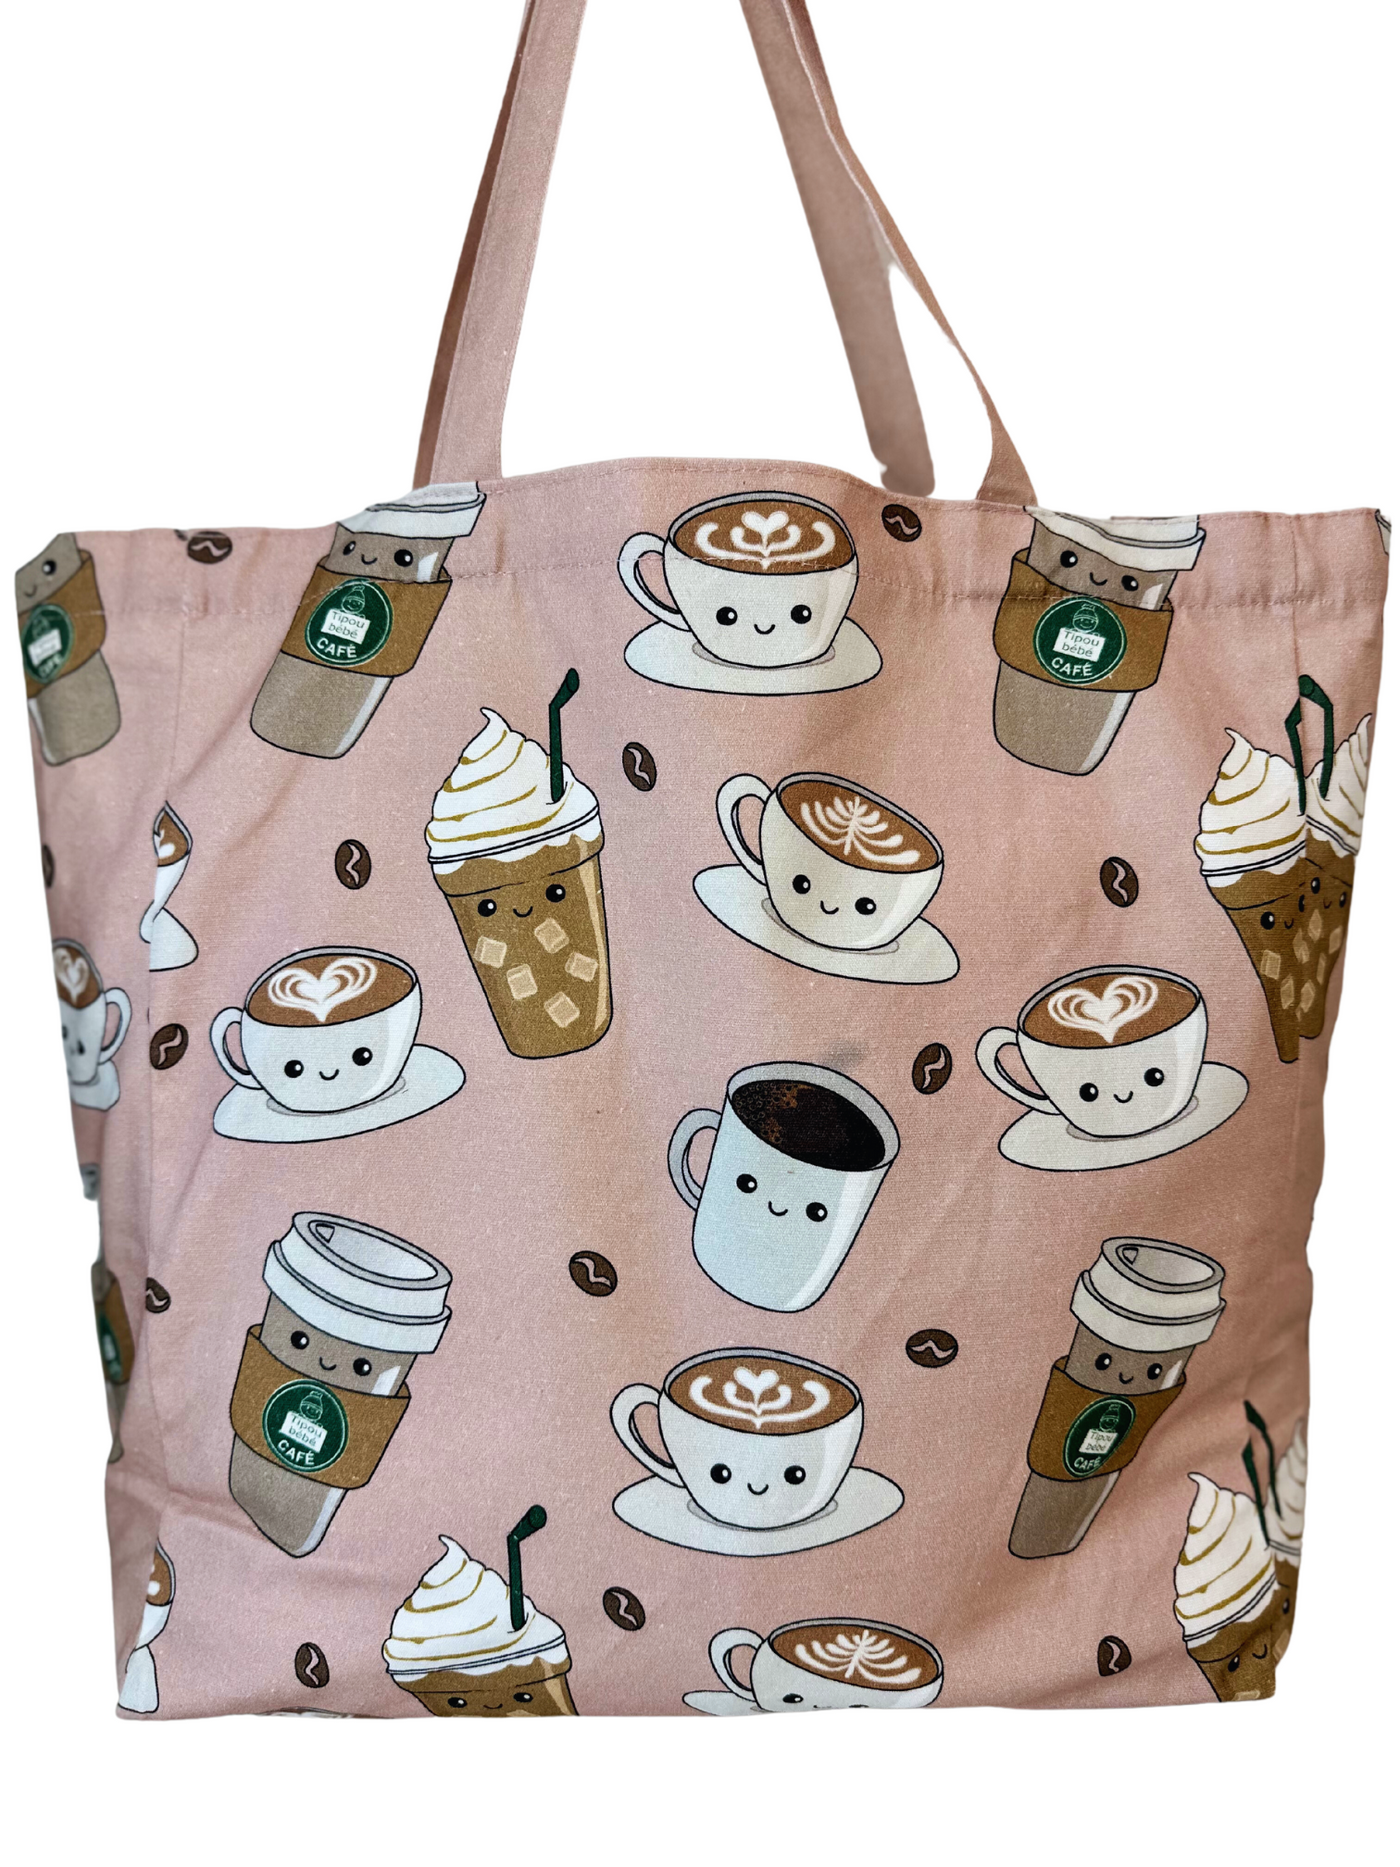 Illustrated Tote Bag: Tipou Bébé Coffee Shop